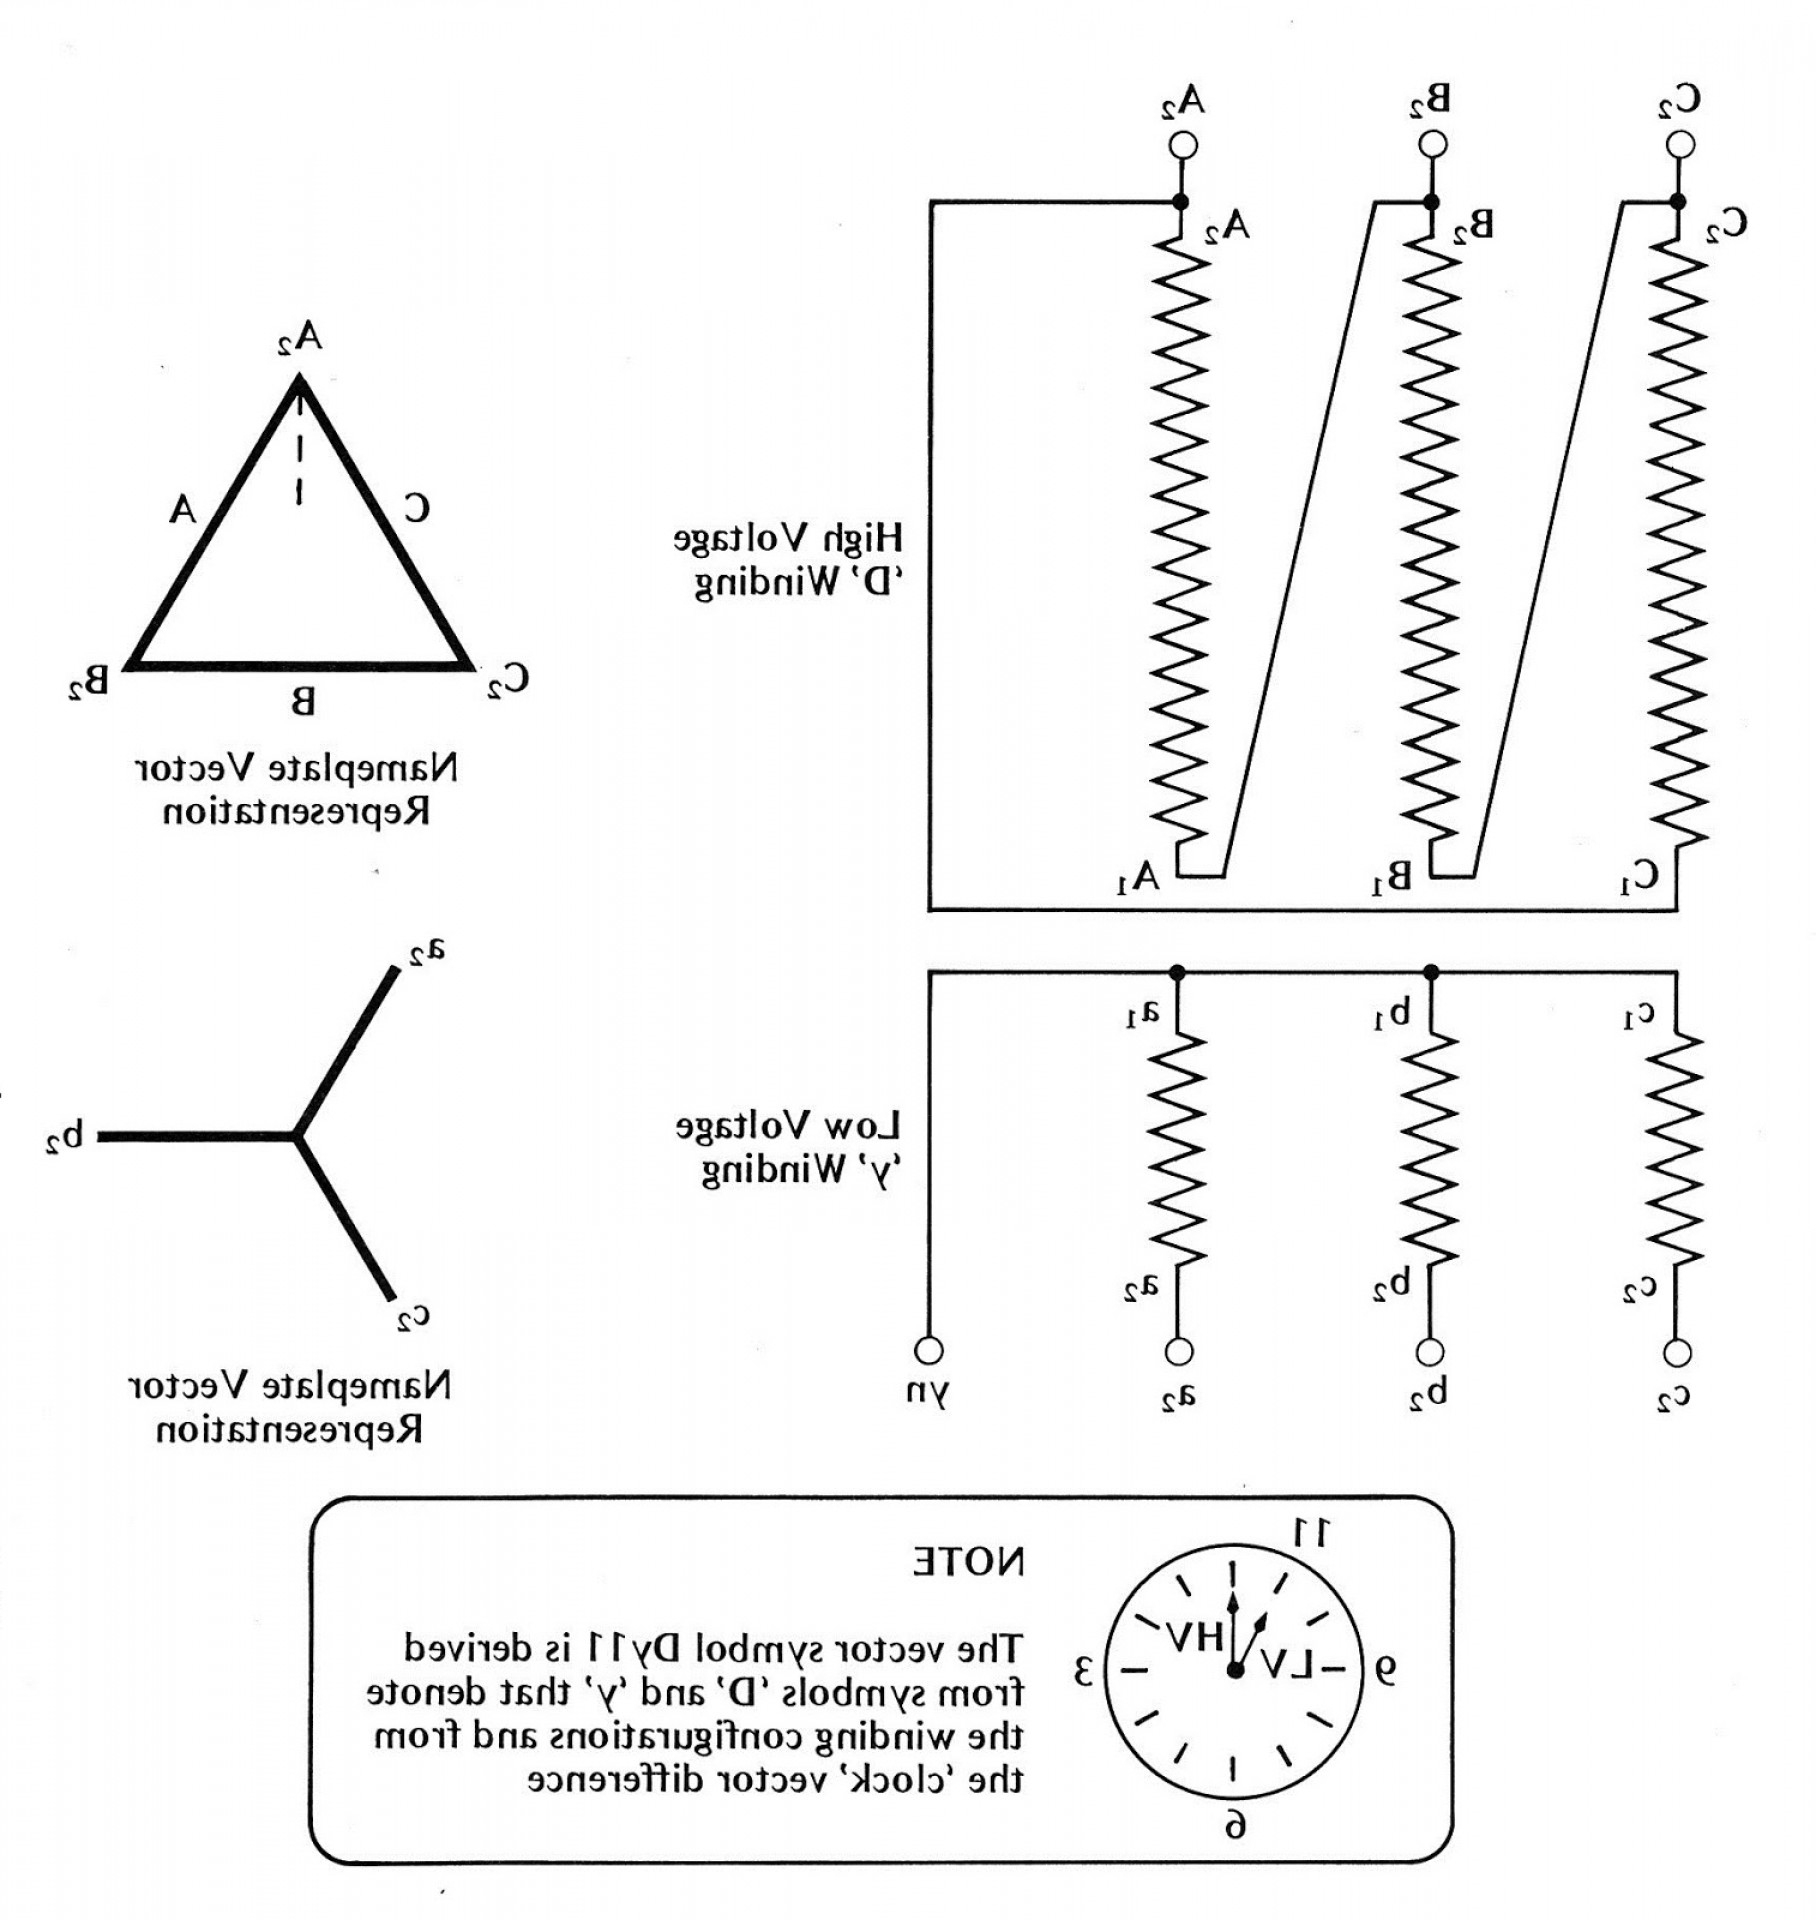 Single Phase Transformer Wiring Diagram Symbols For Three Phase - Single Phase Transformer Wiring Diagram